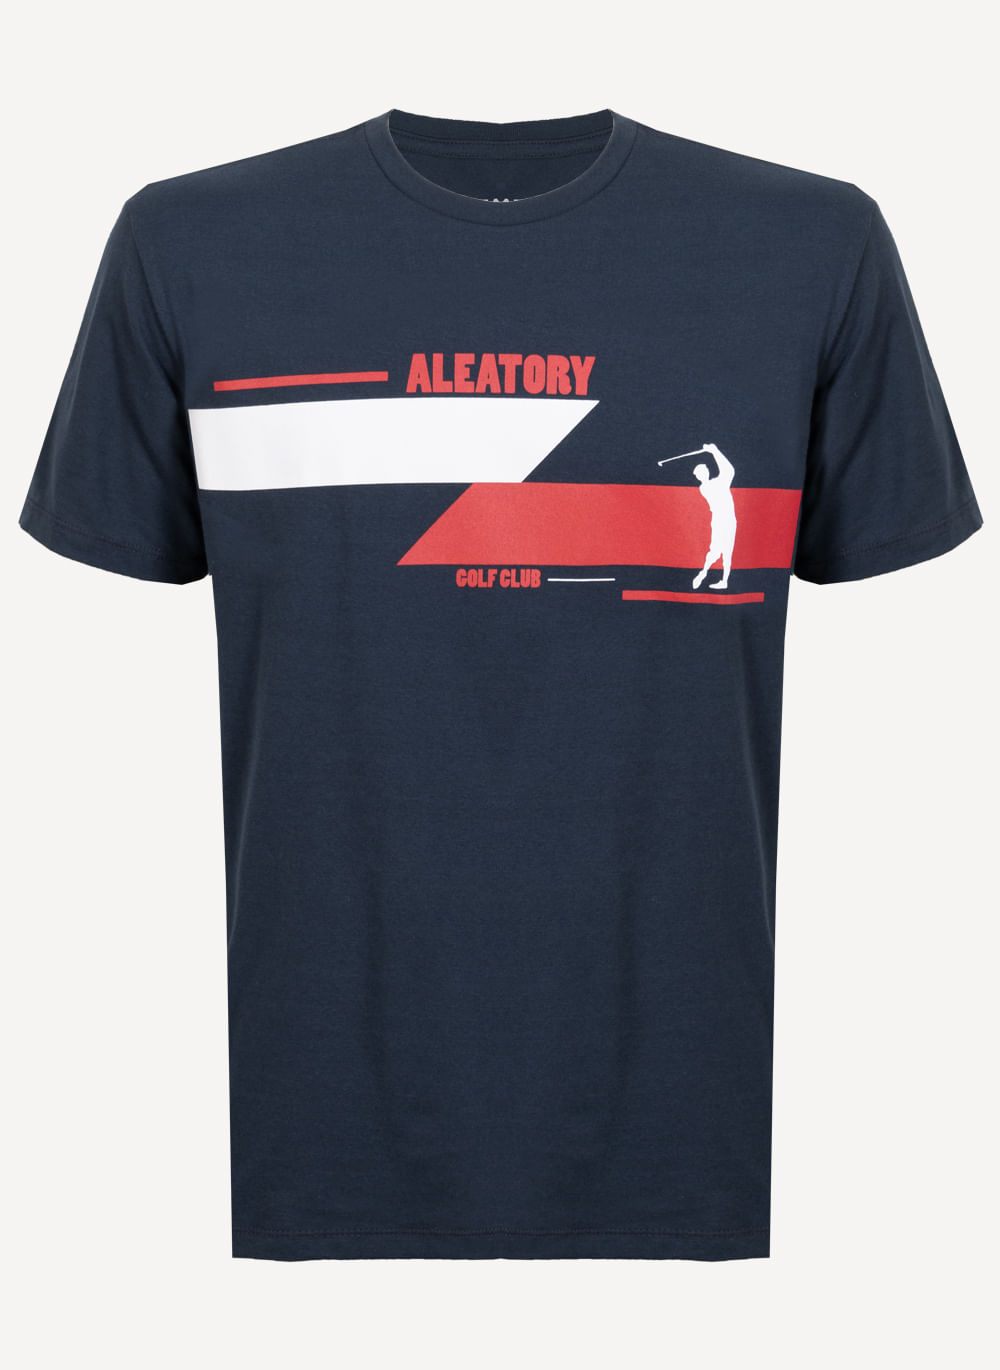 Camiseta-Aleatory-Estampada-Golf-Marinho-Azul-Marinho-P